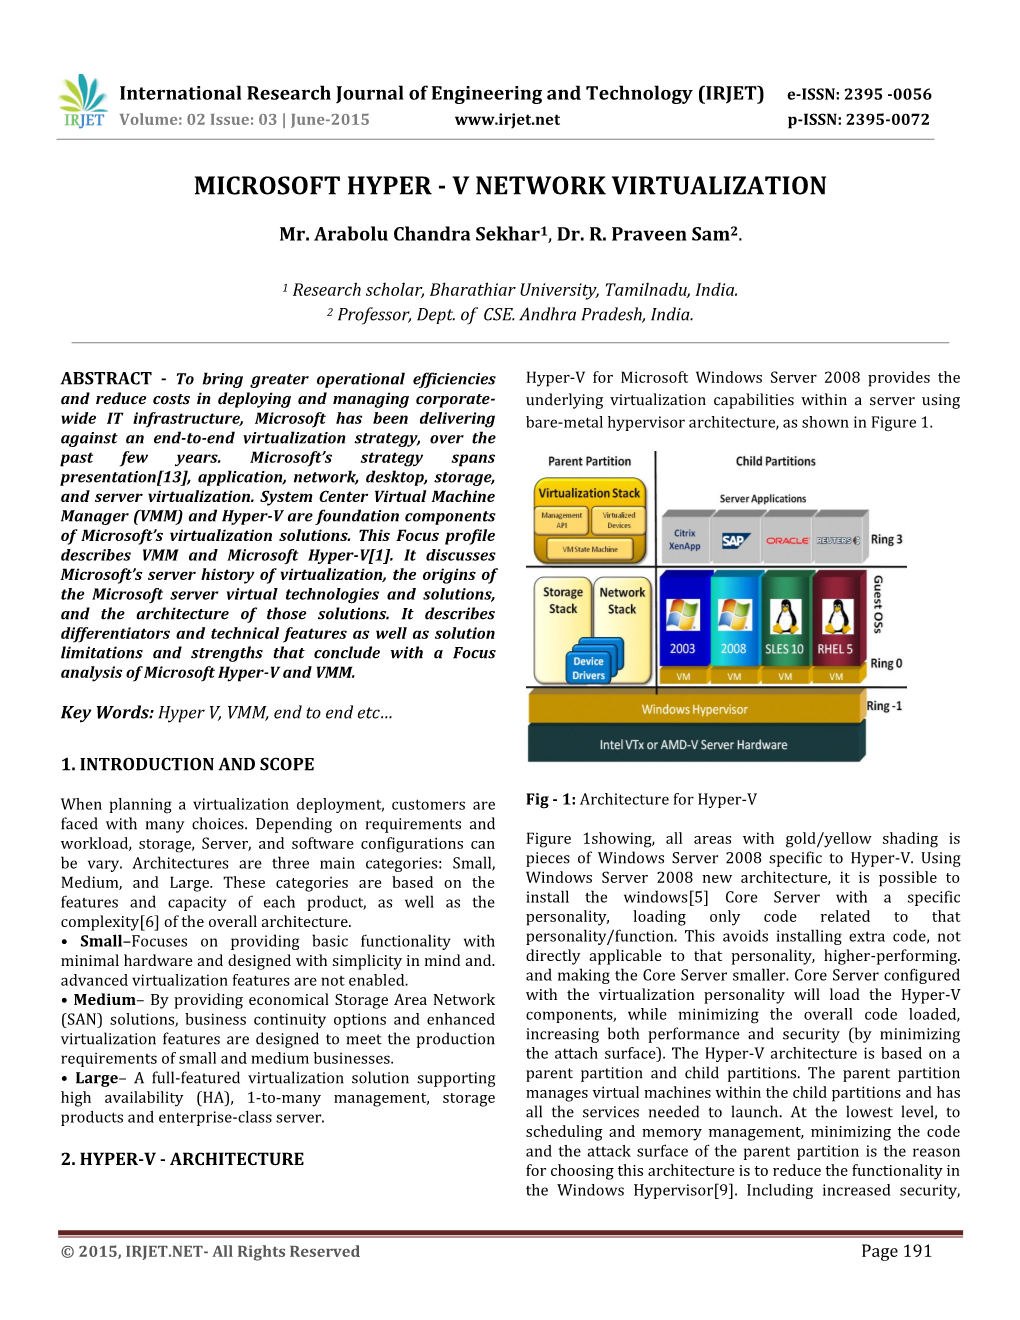 Microsoft Hyper - V Network Virtualization